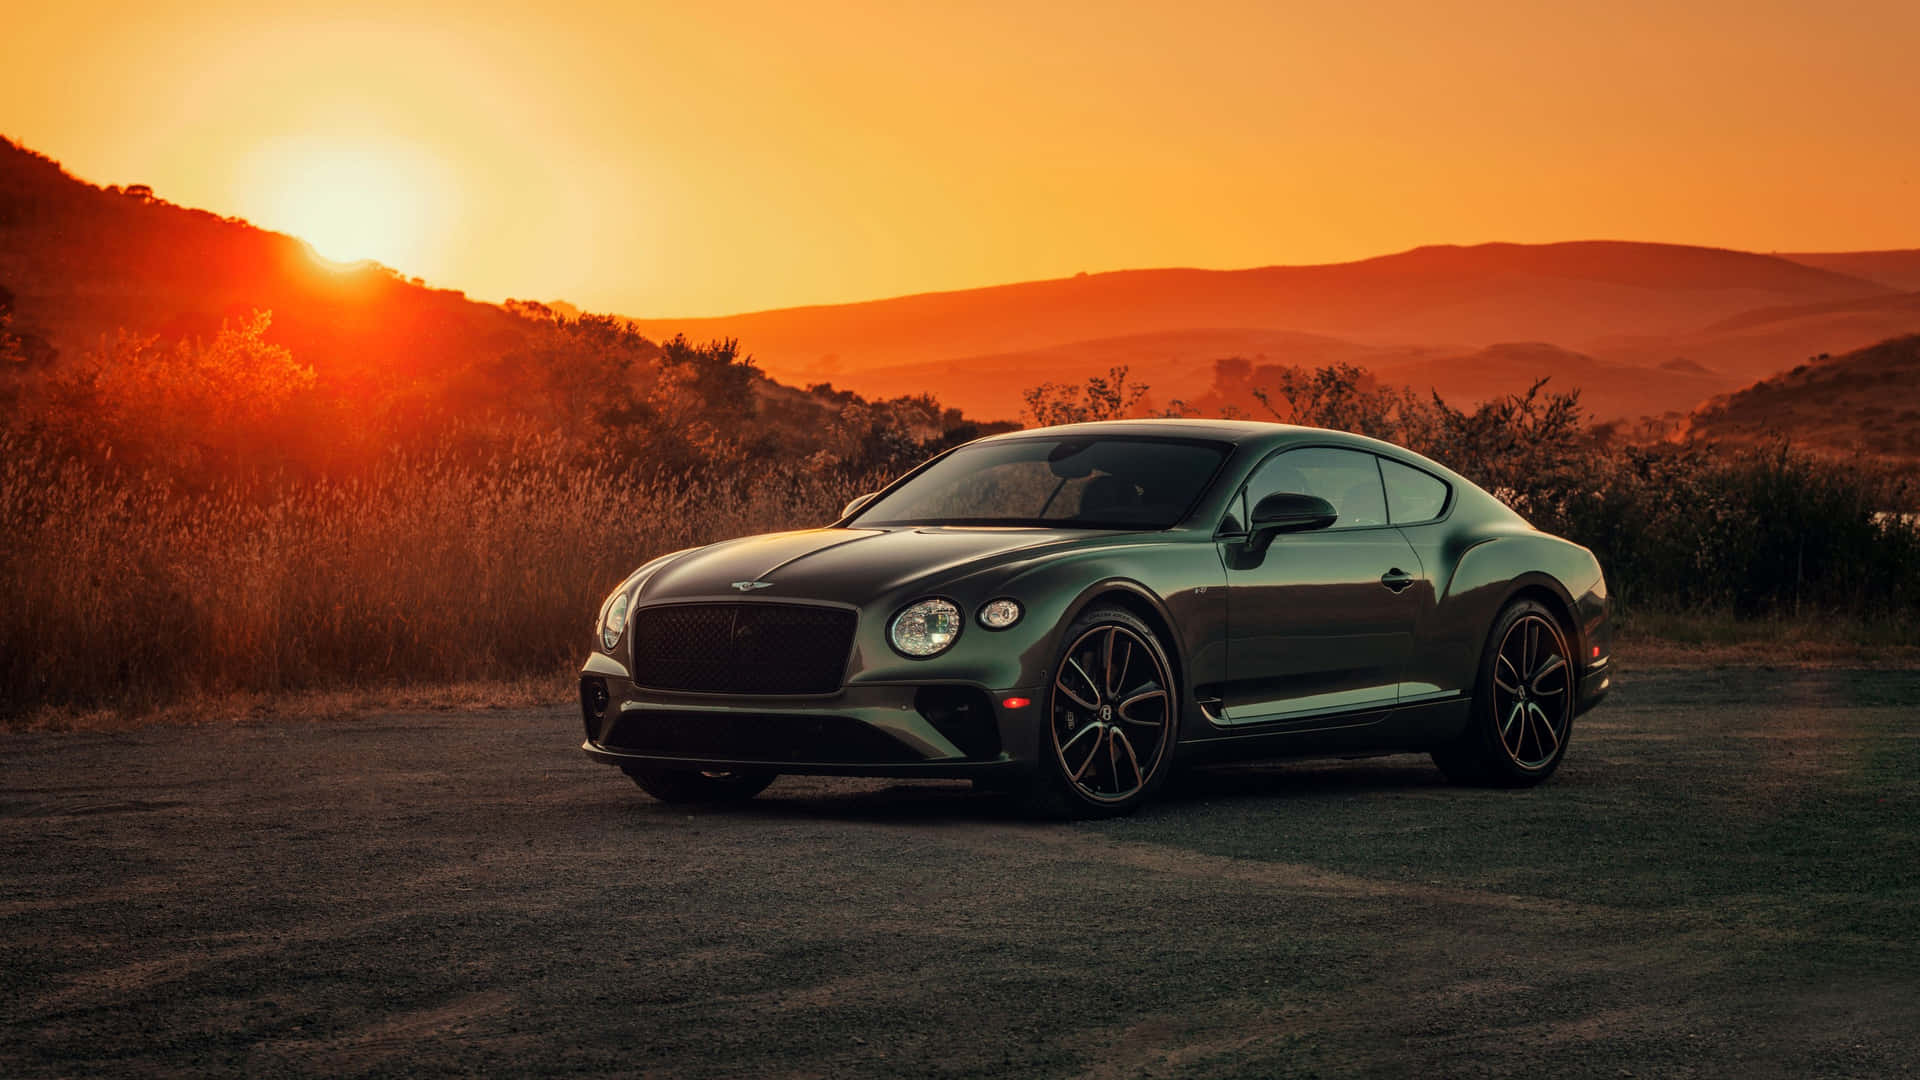 "Bentley Sport - Luxury and Performance Combine" Wallpaper